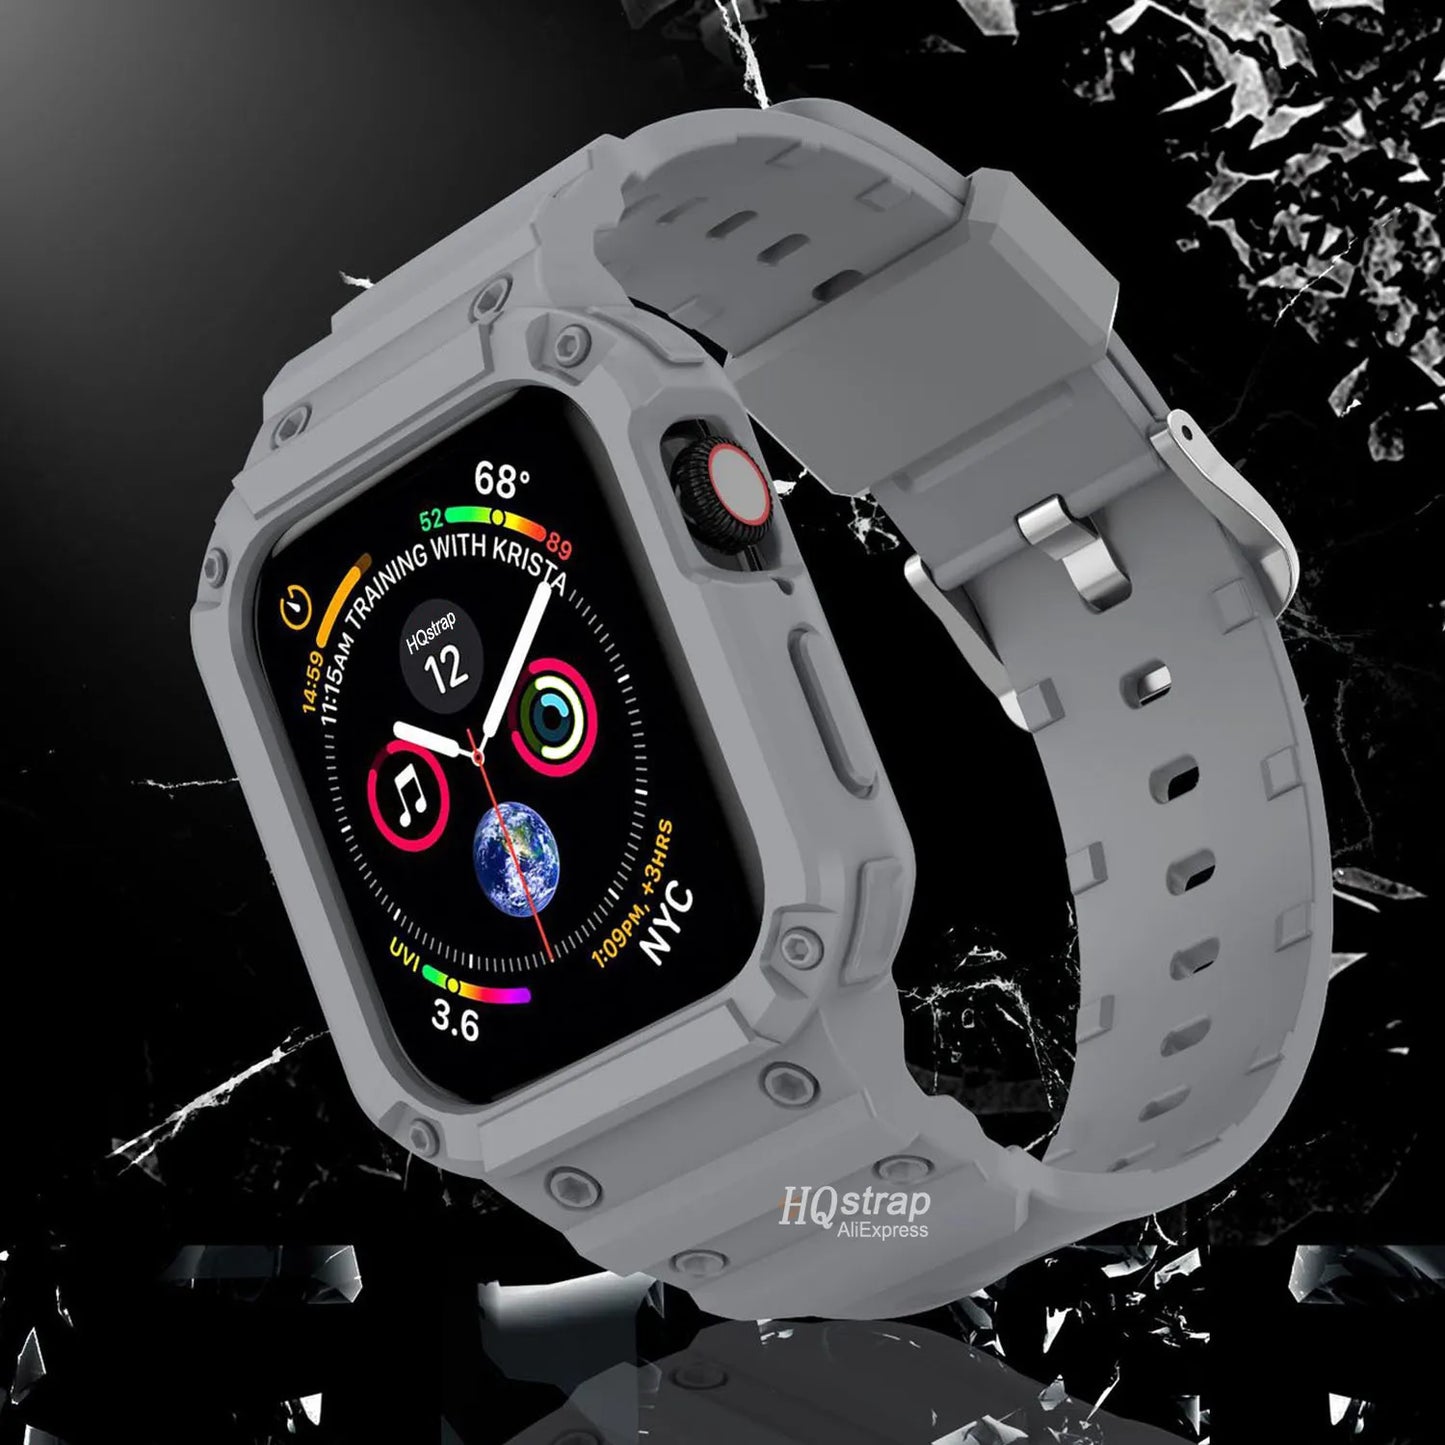 E-Watch™|Ζάντα για όλα τα Apple Watch|Προστατευτικό κάλυμμα + θήκη|Υπερανθεκτικό και αναπνεύσιμο σιλικόνη